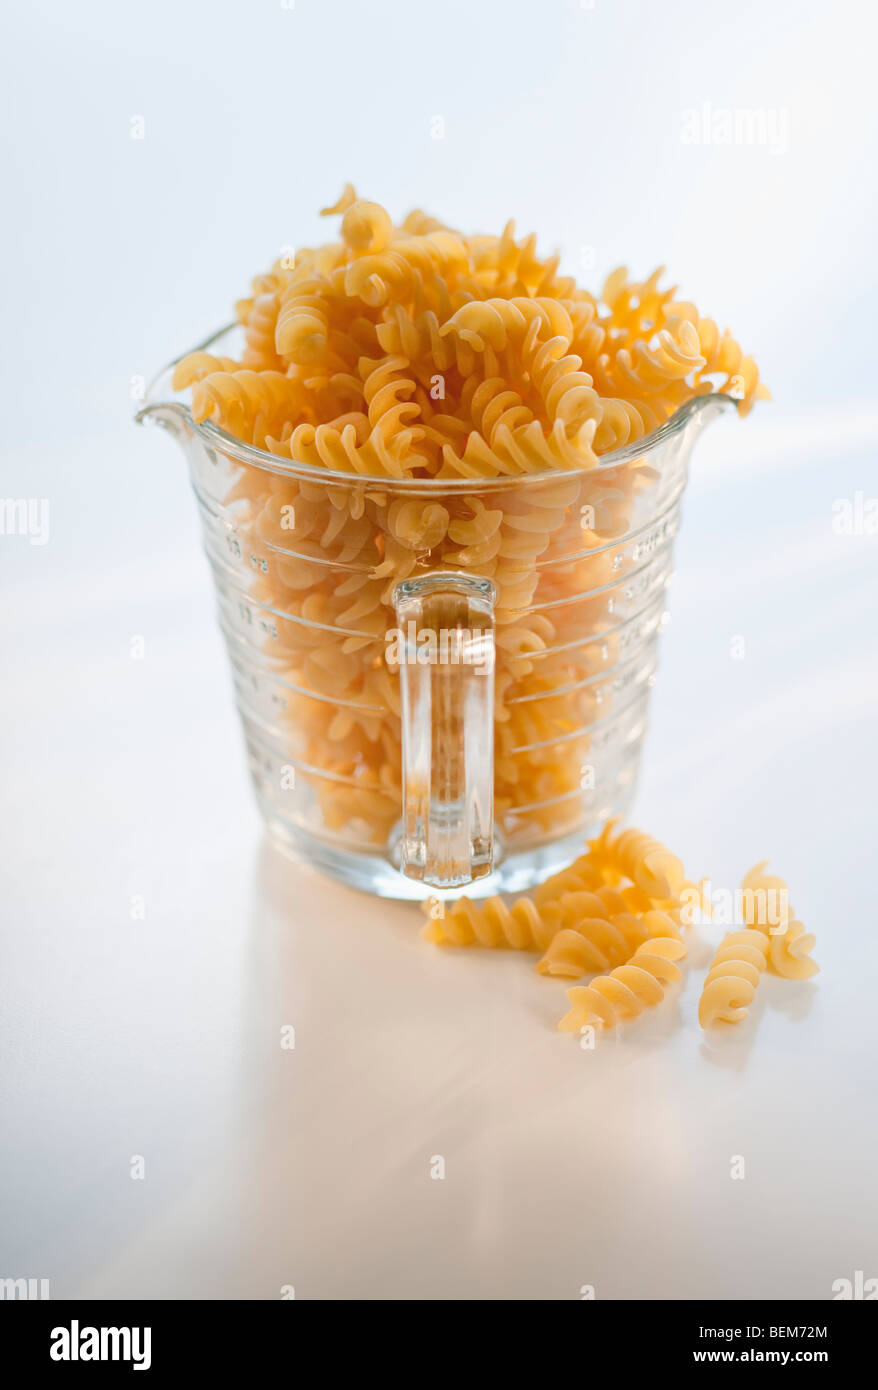 Pasta in bowl Stock Photo